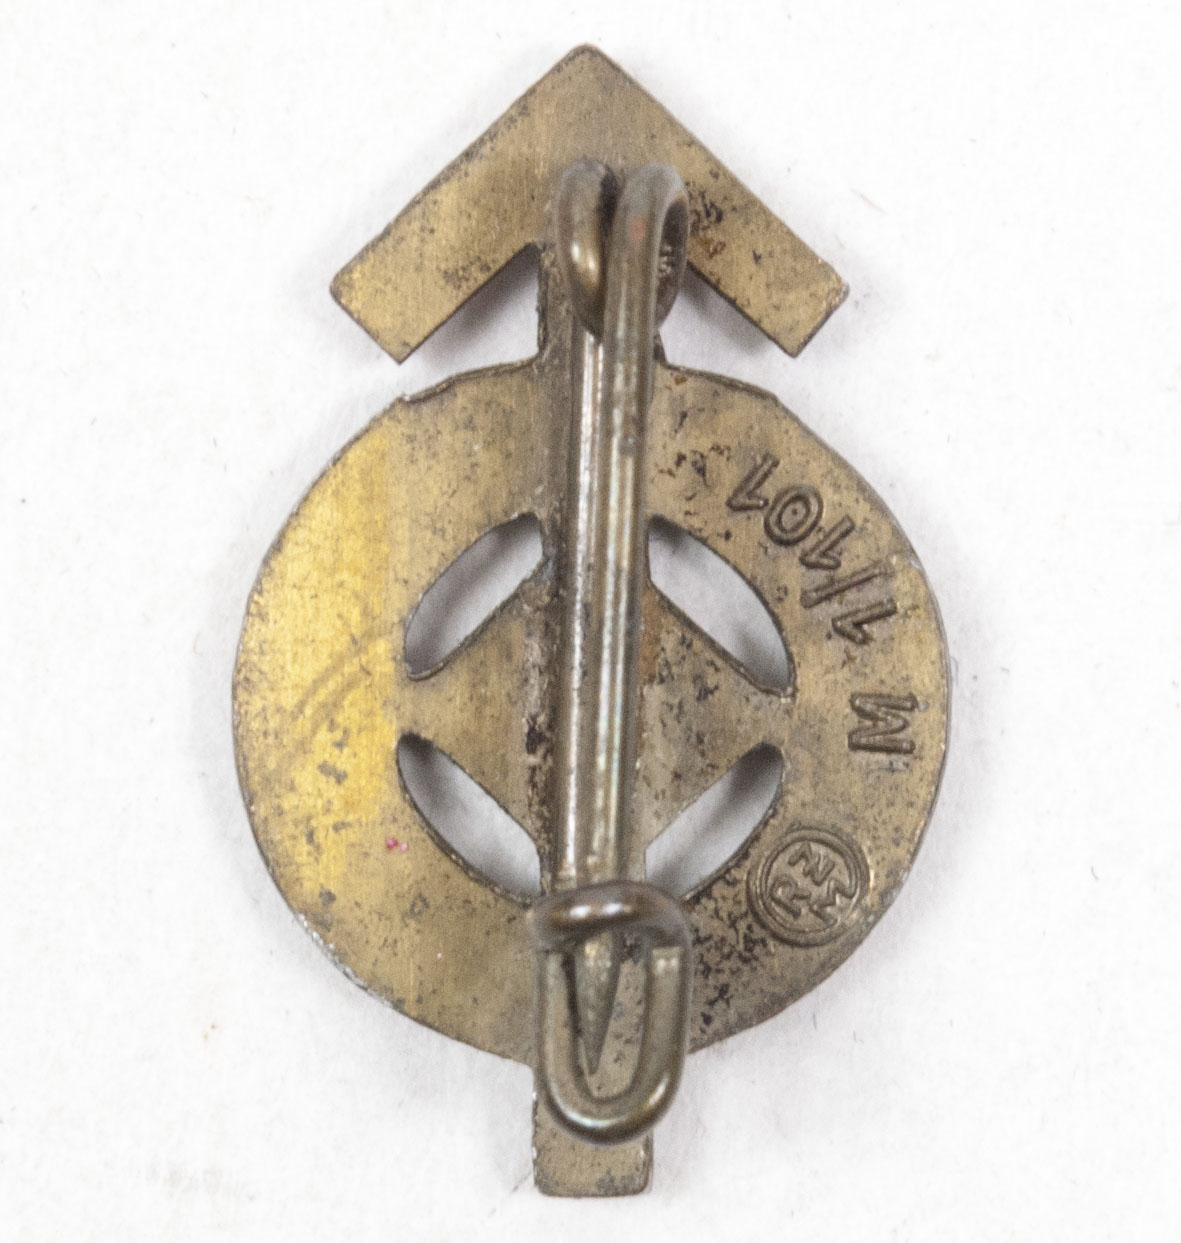 Hitler Jugend (HJ) miniature Leistungsabzeichen in bronze by RZM M1101 (Gustav Brehmer)